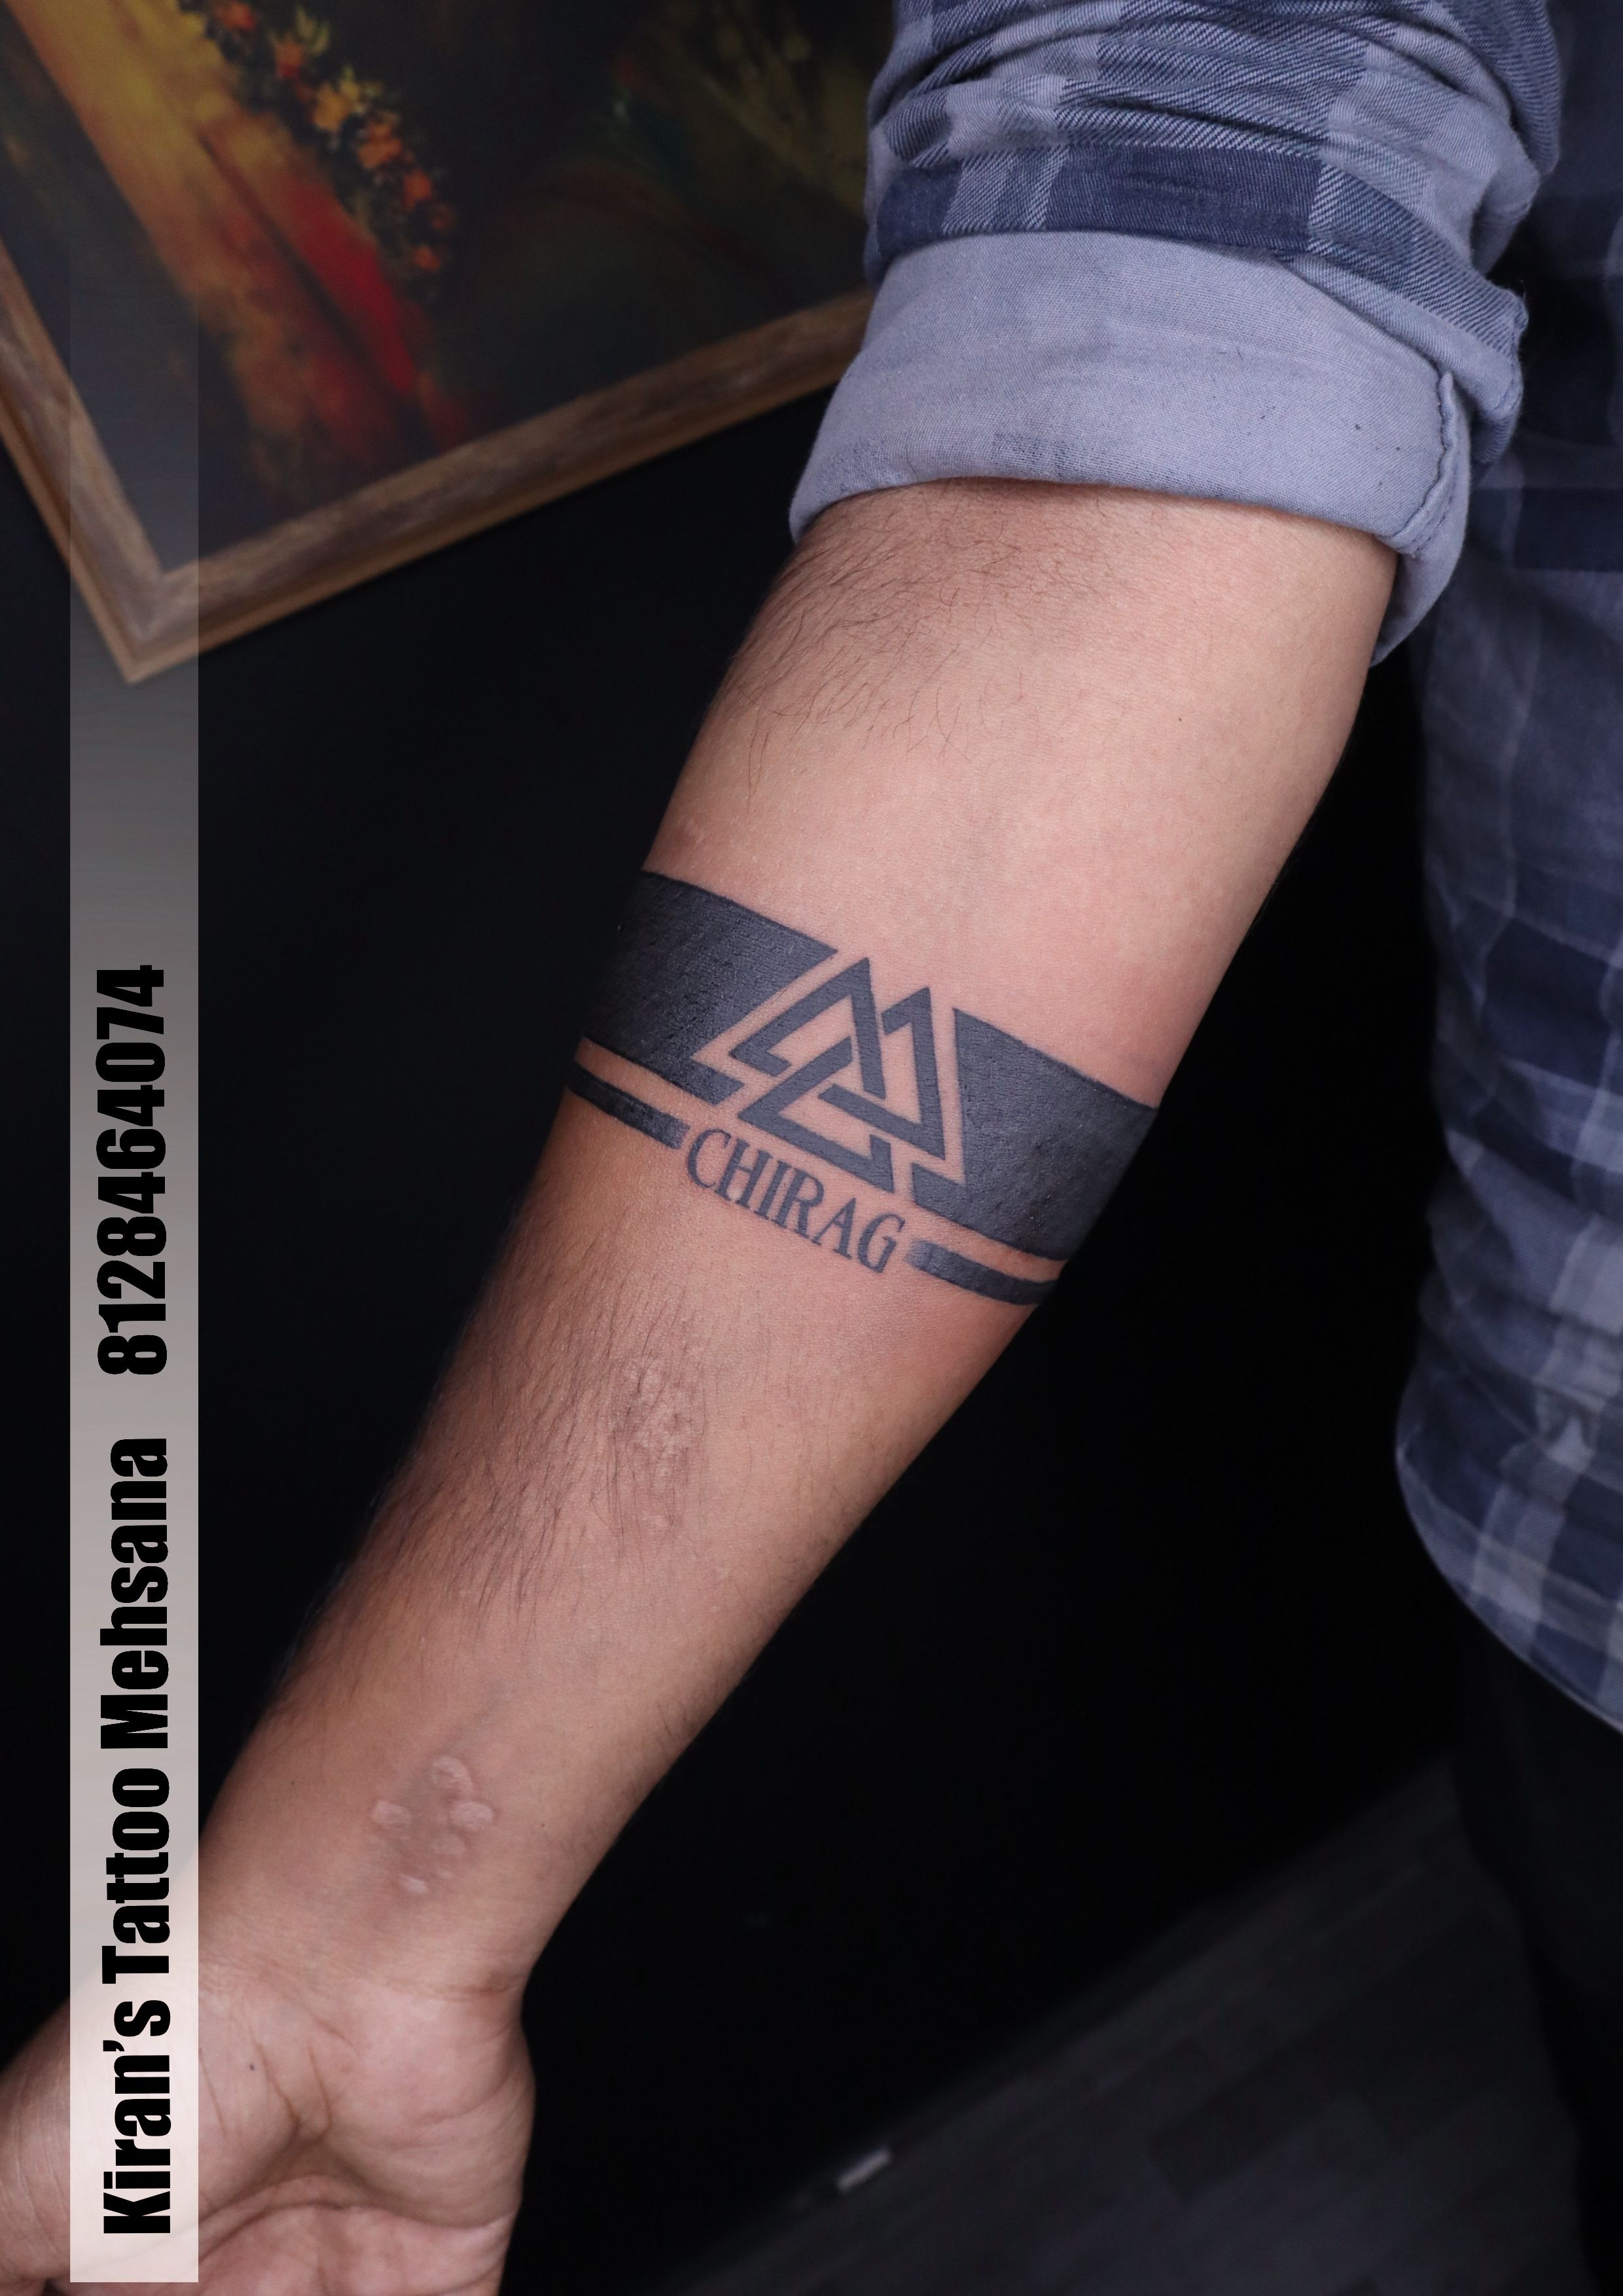 Arm band tattoos : r/asktransgender